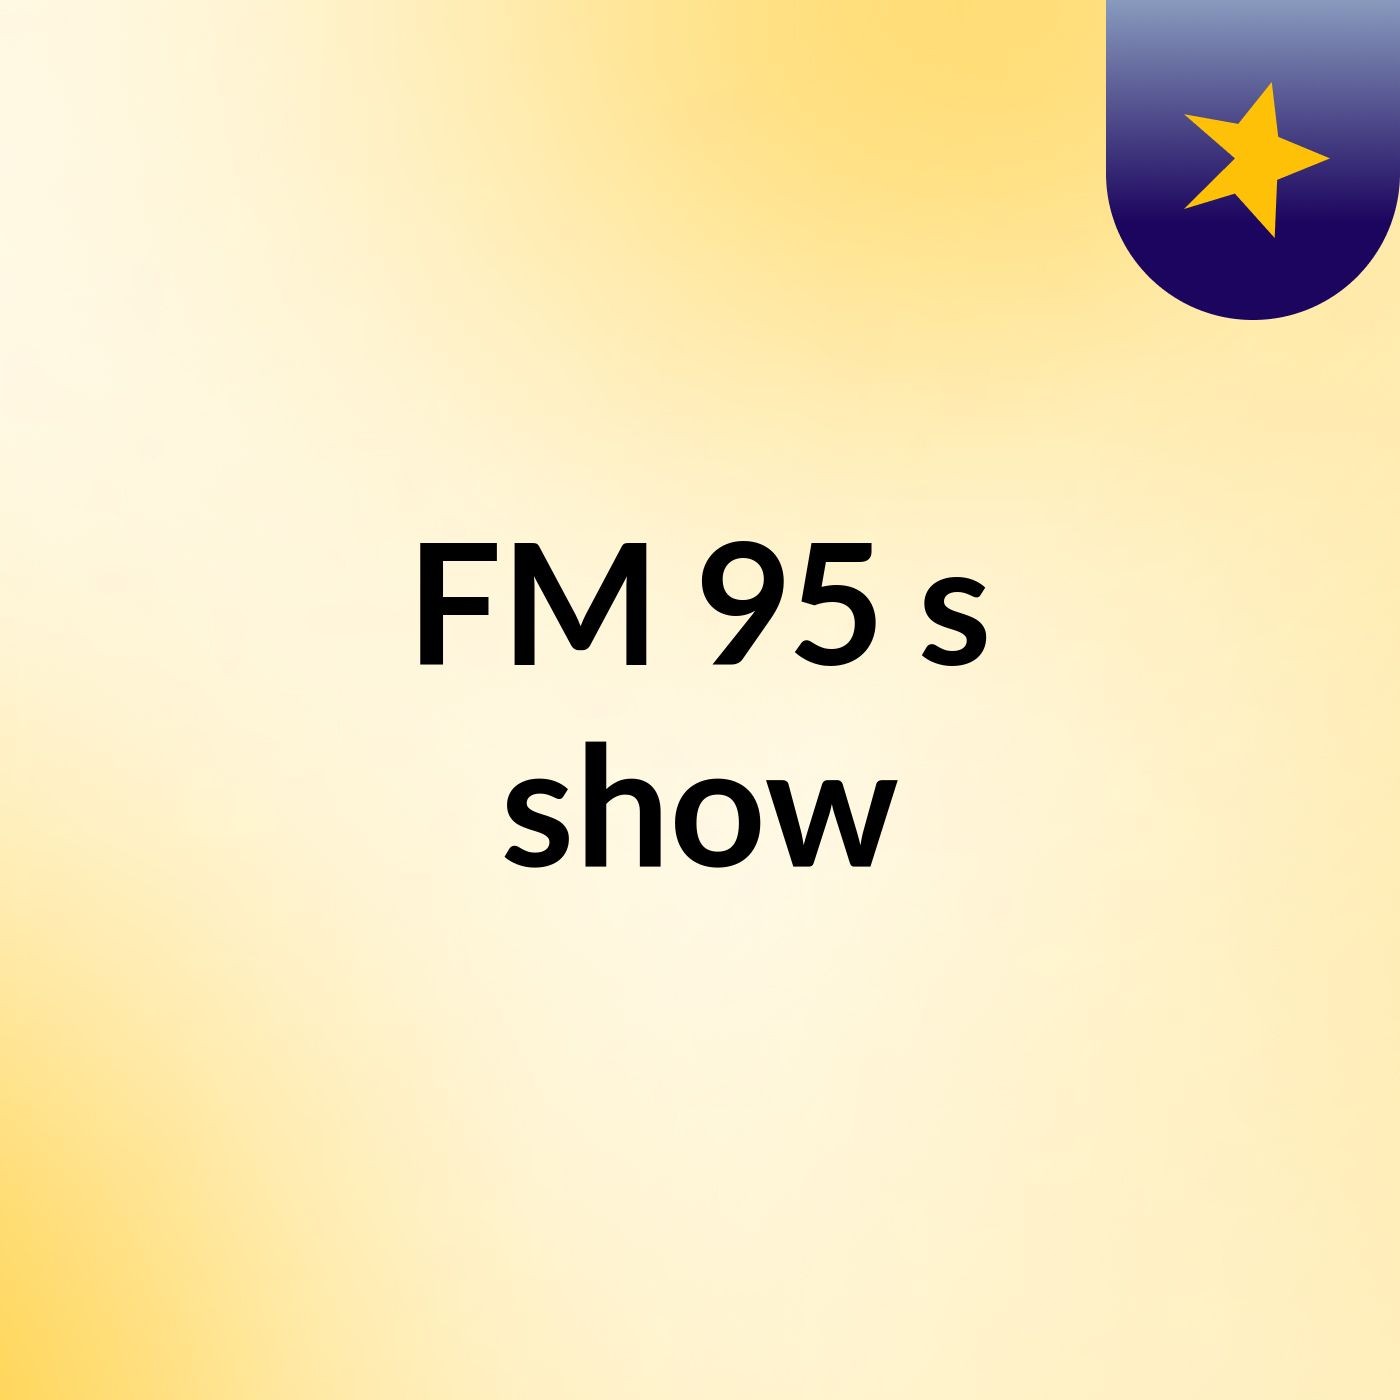 FM 95's show